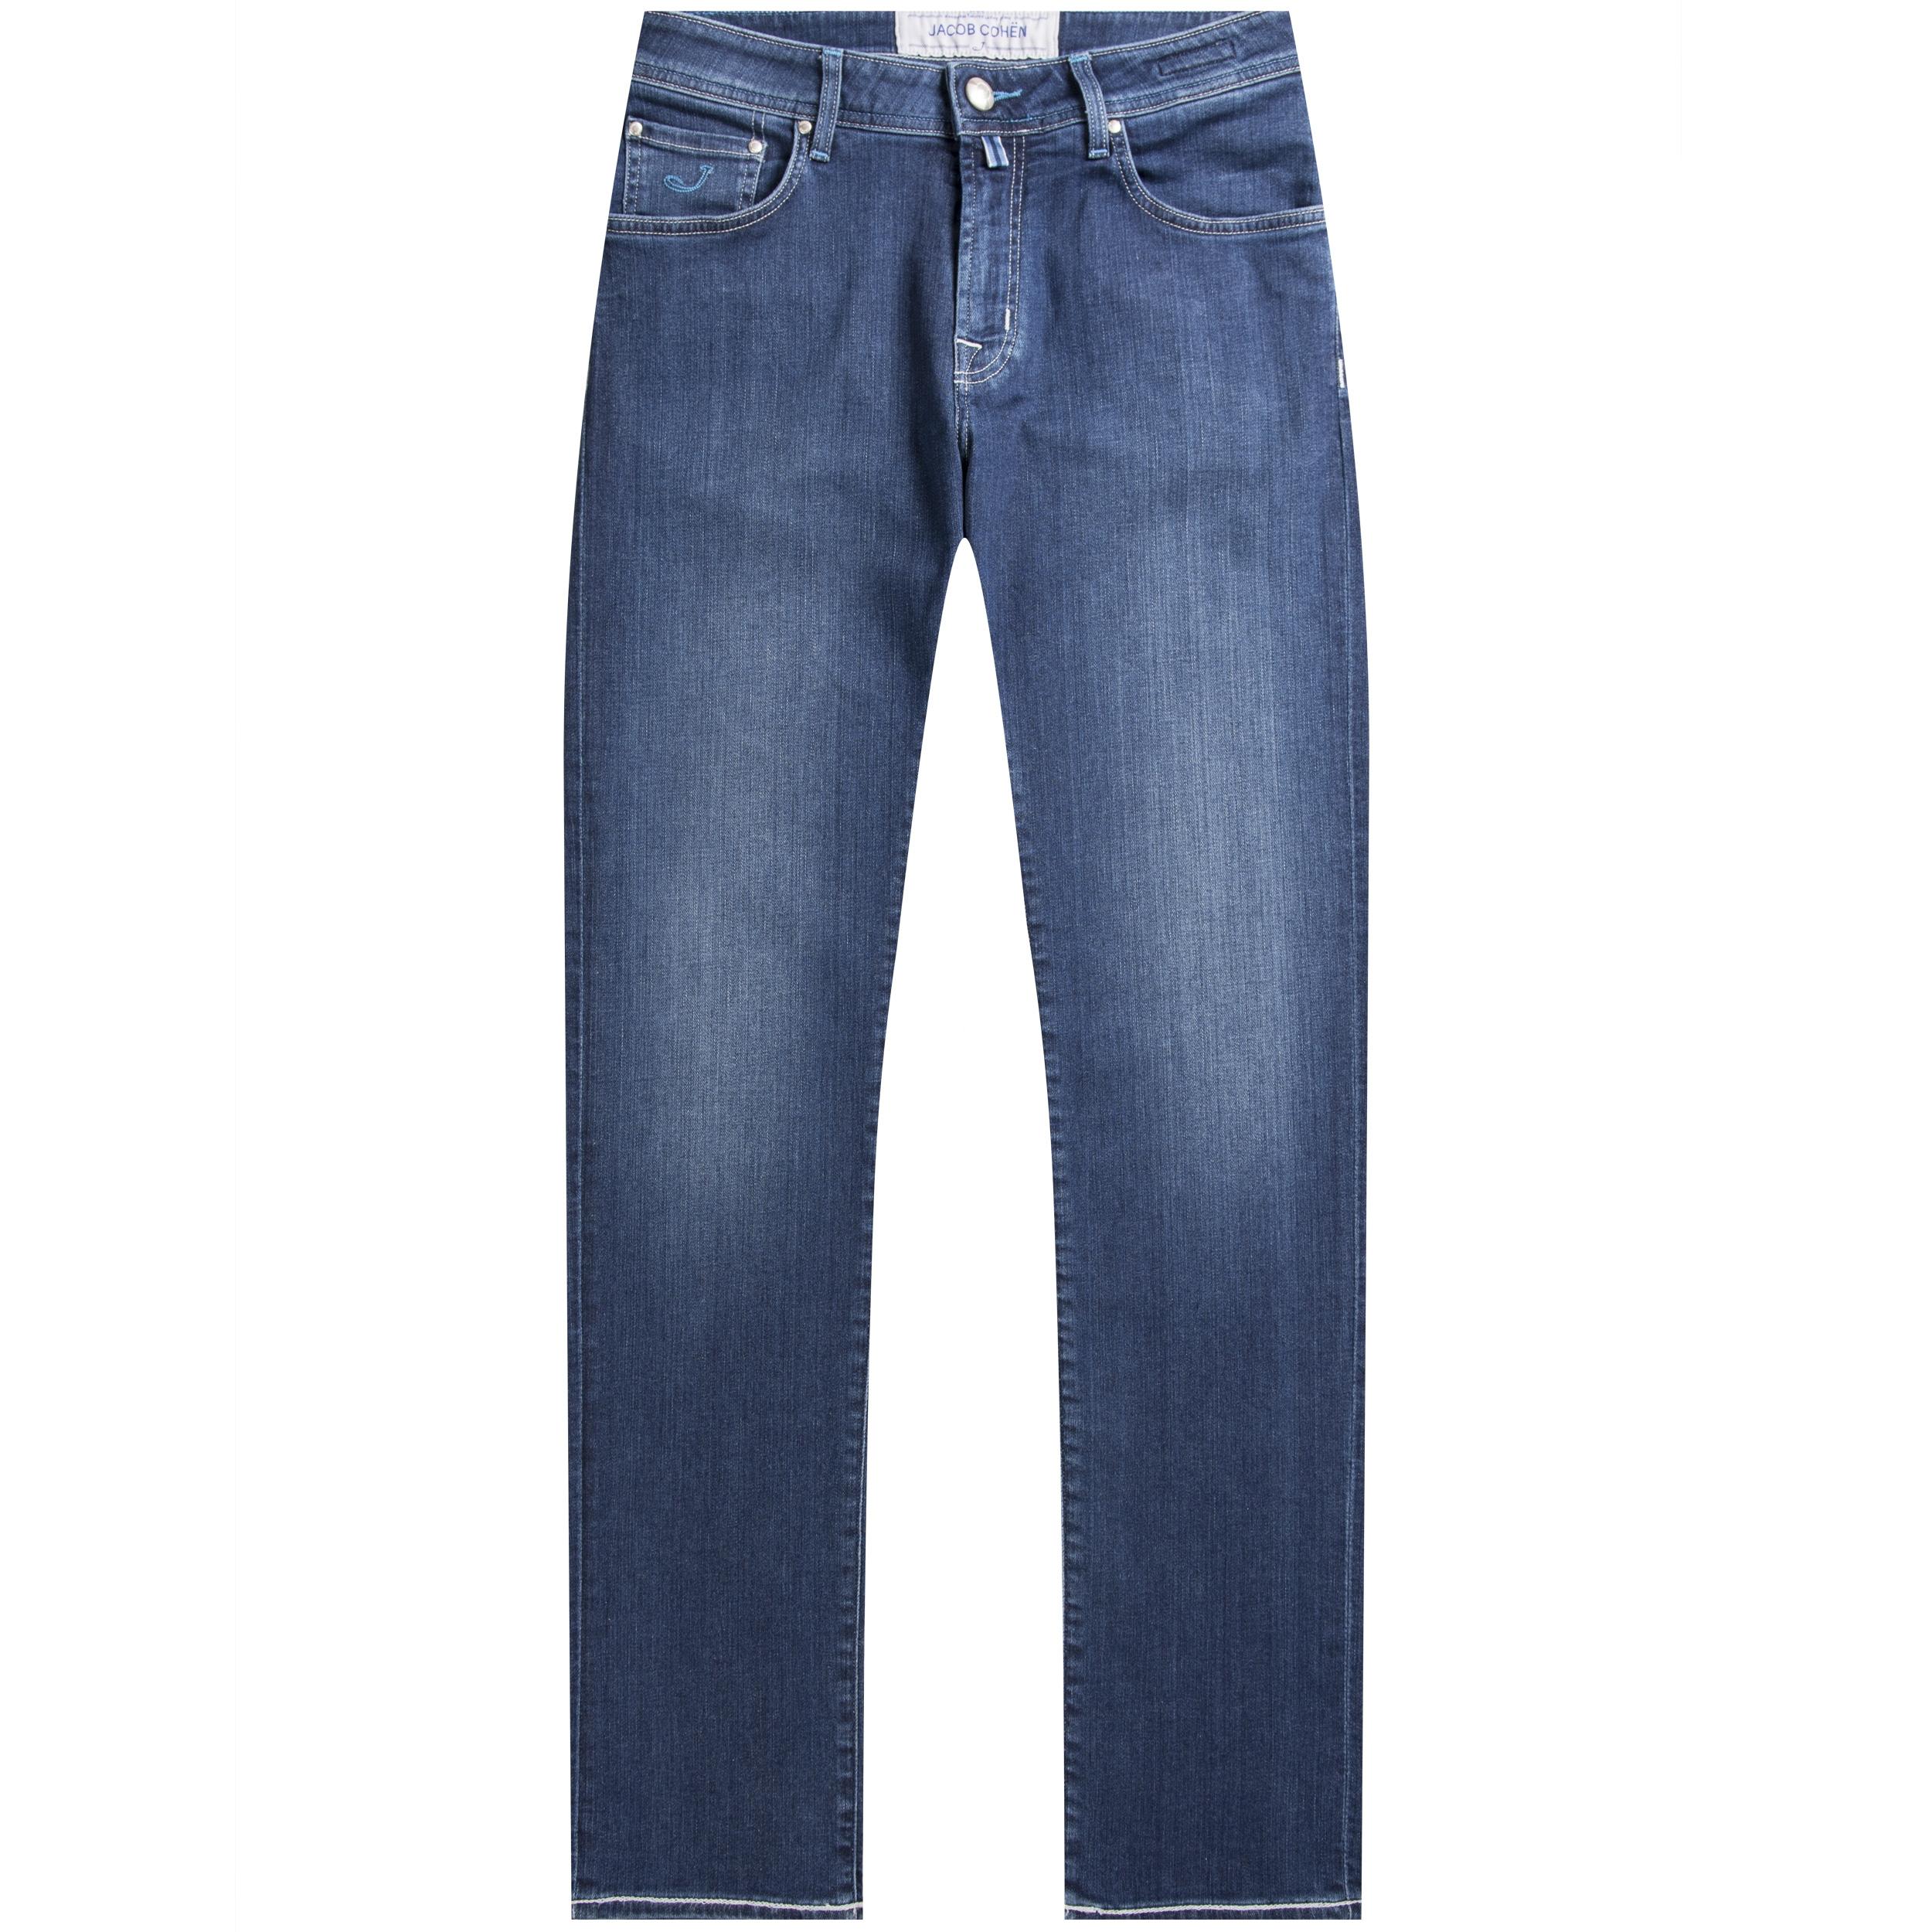 Jacob Cohen Denim 'j625' Comfort Fit Stretch Jeans Blue for Men - Lyst